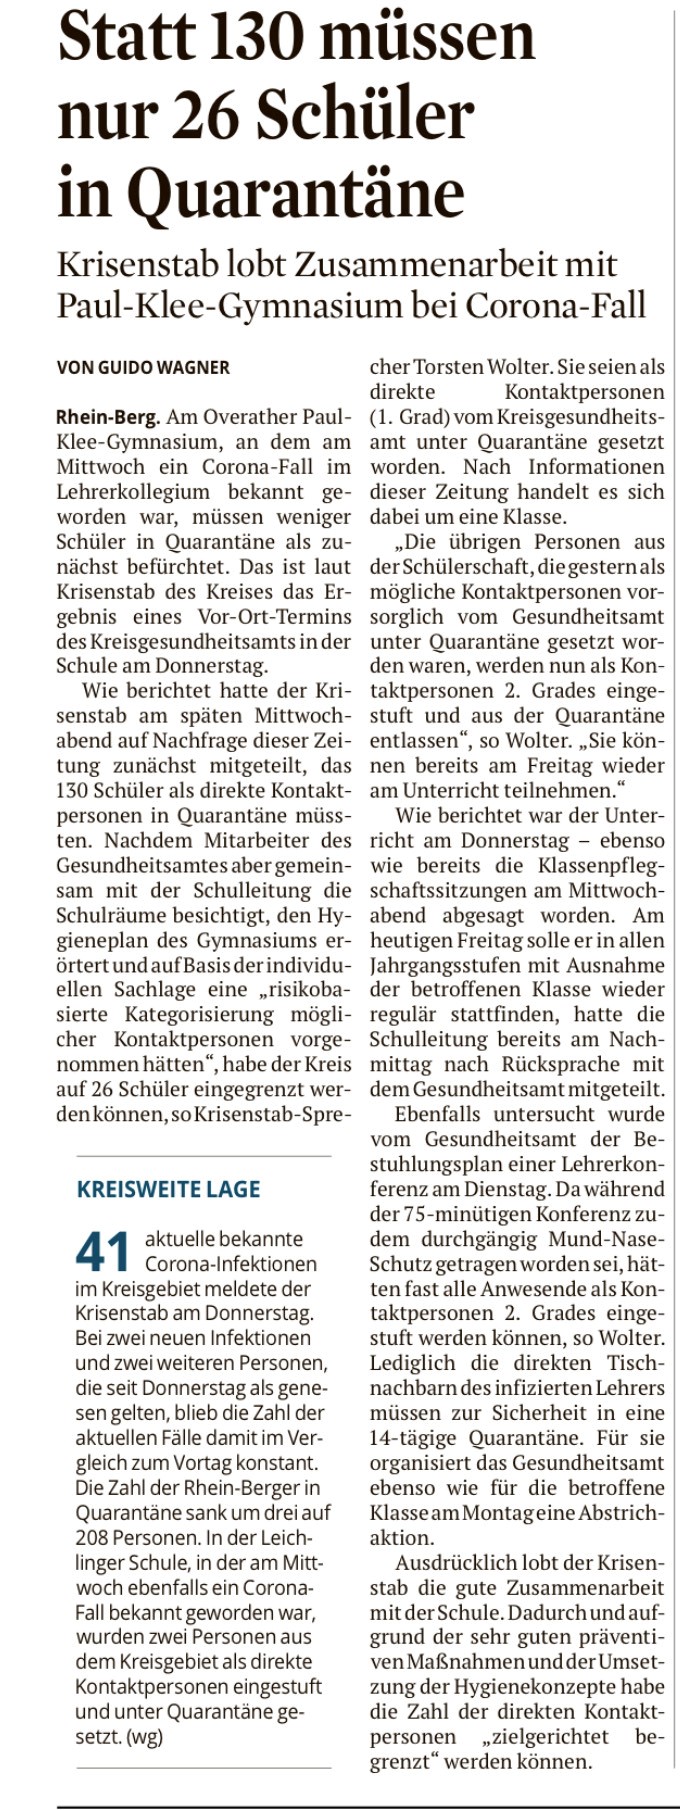 Presse-Artikel des Kölner Stadtanzeigers zum Corona-Fall – “Statt 130 müssen nur 26 Schüler in Quarantäne”